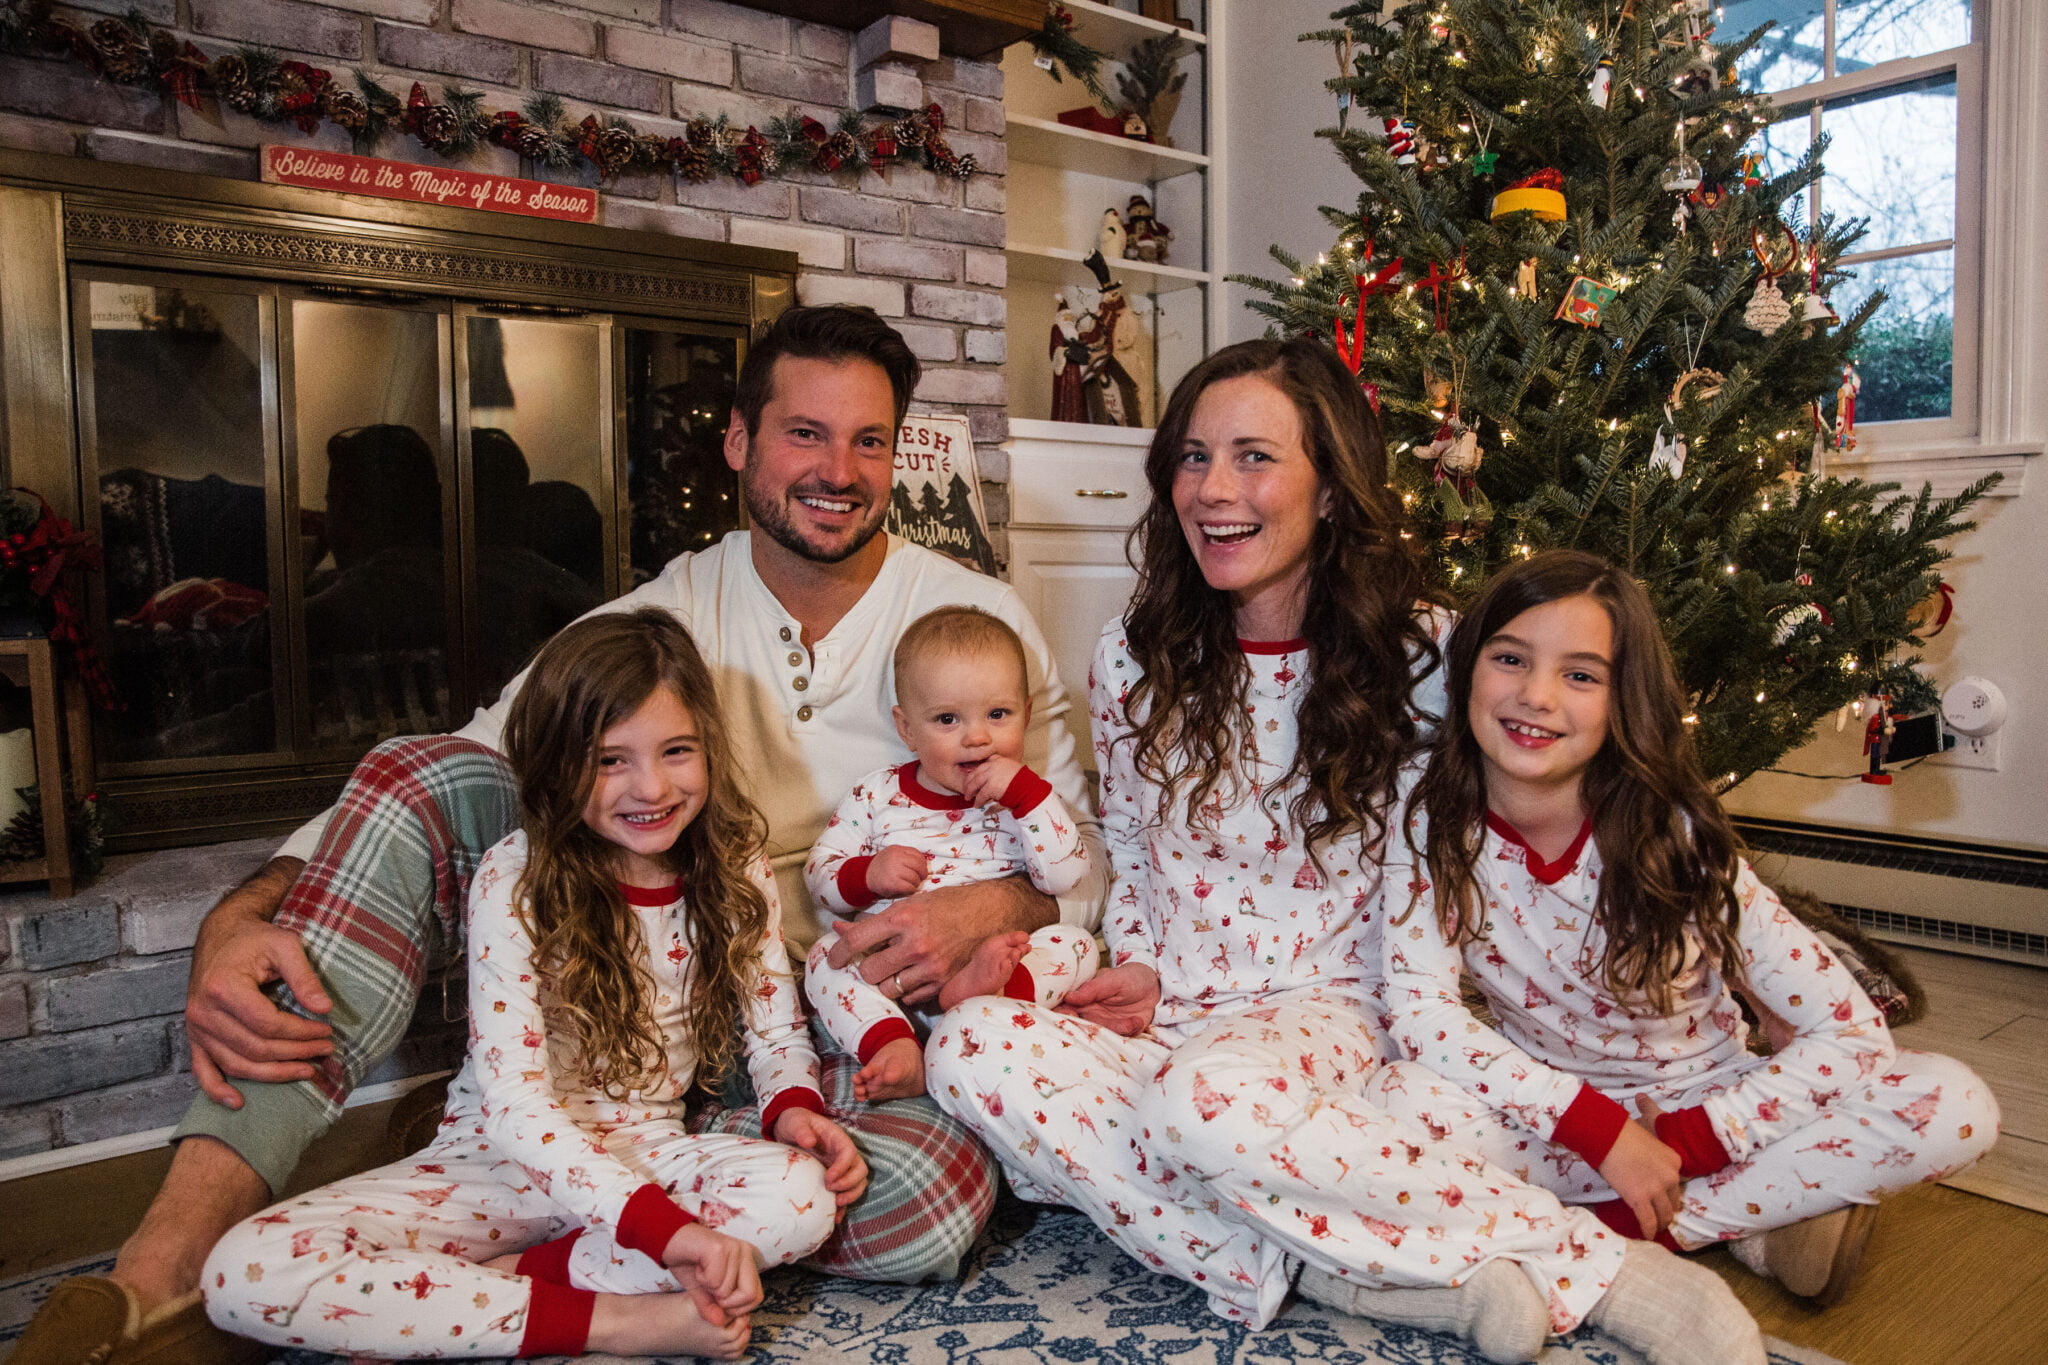 Family in Matching Christmas Pajamas by Tree and Fireplace Lake Pajamas Jcrew